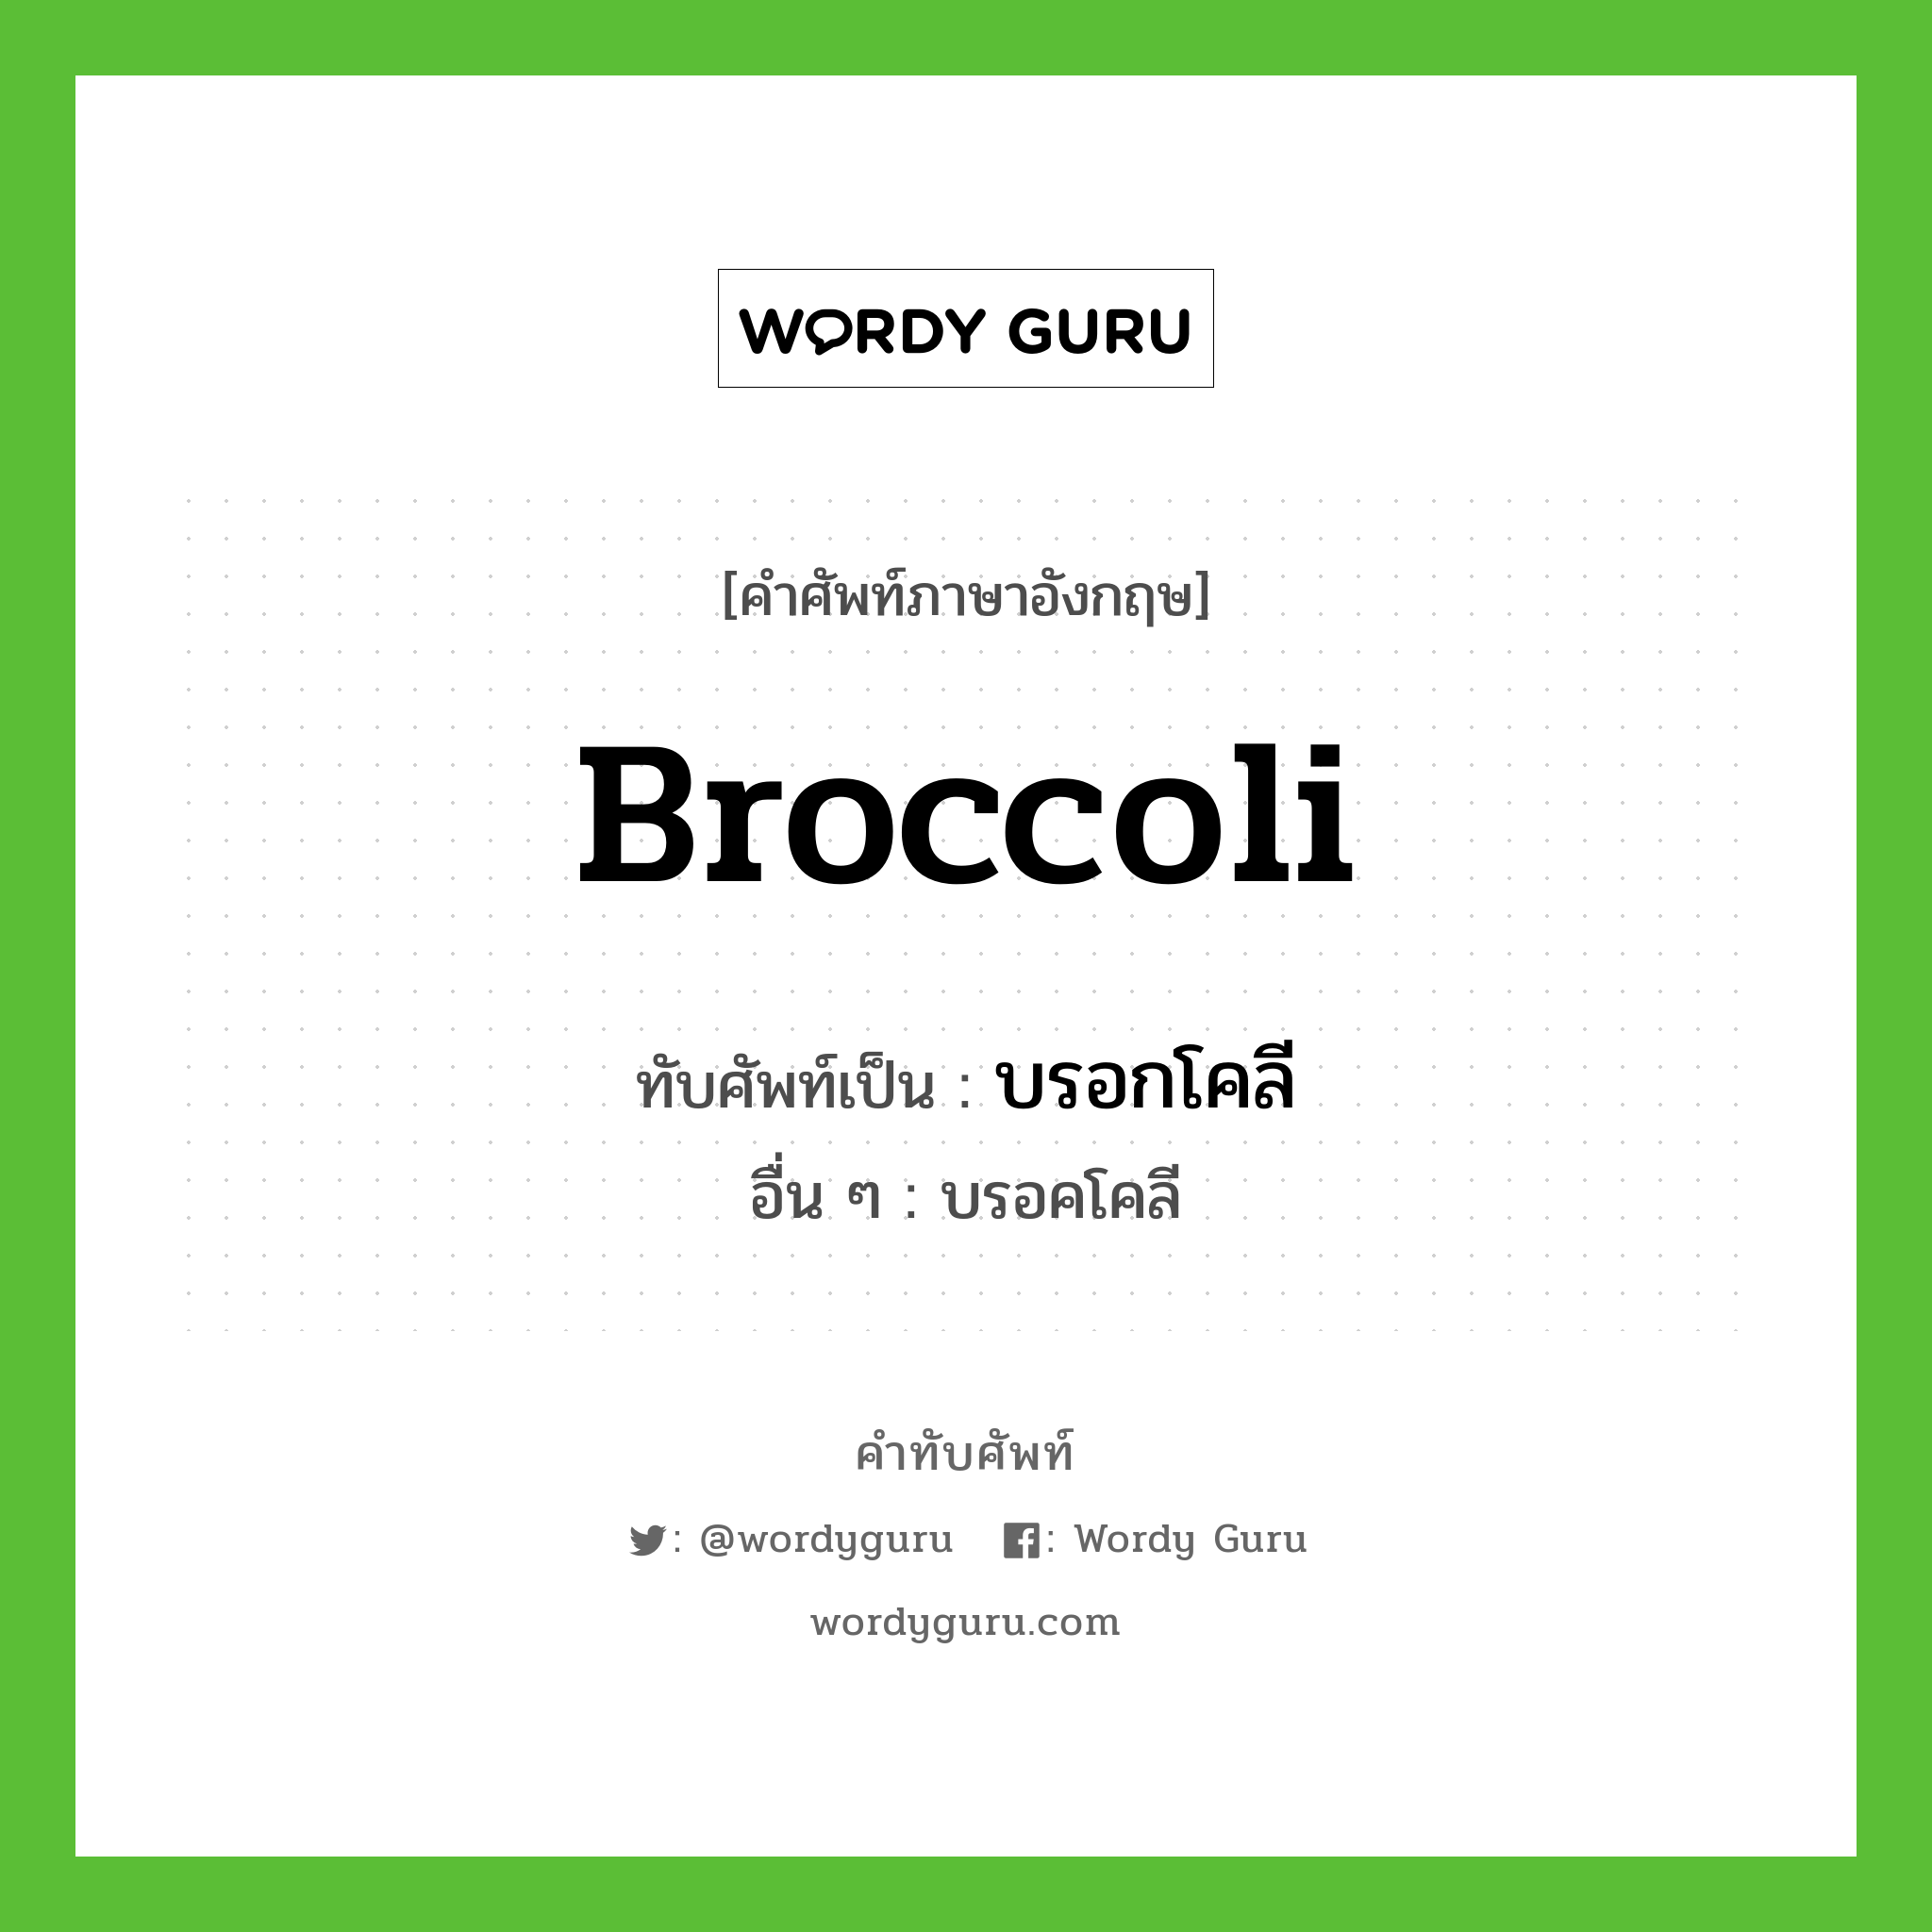 บรอกโคลี เขียนอย่างไร?, คำศัพท์ภาษาอังกฤษ บรอกโคลี ทับศัพท์เป็น broccoli อื่น ๆ บรอคโคลี